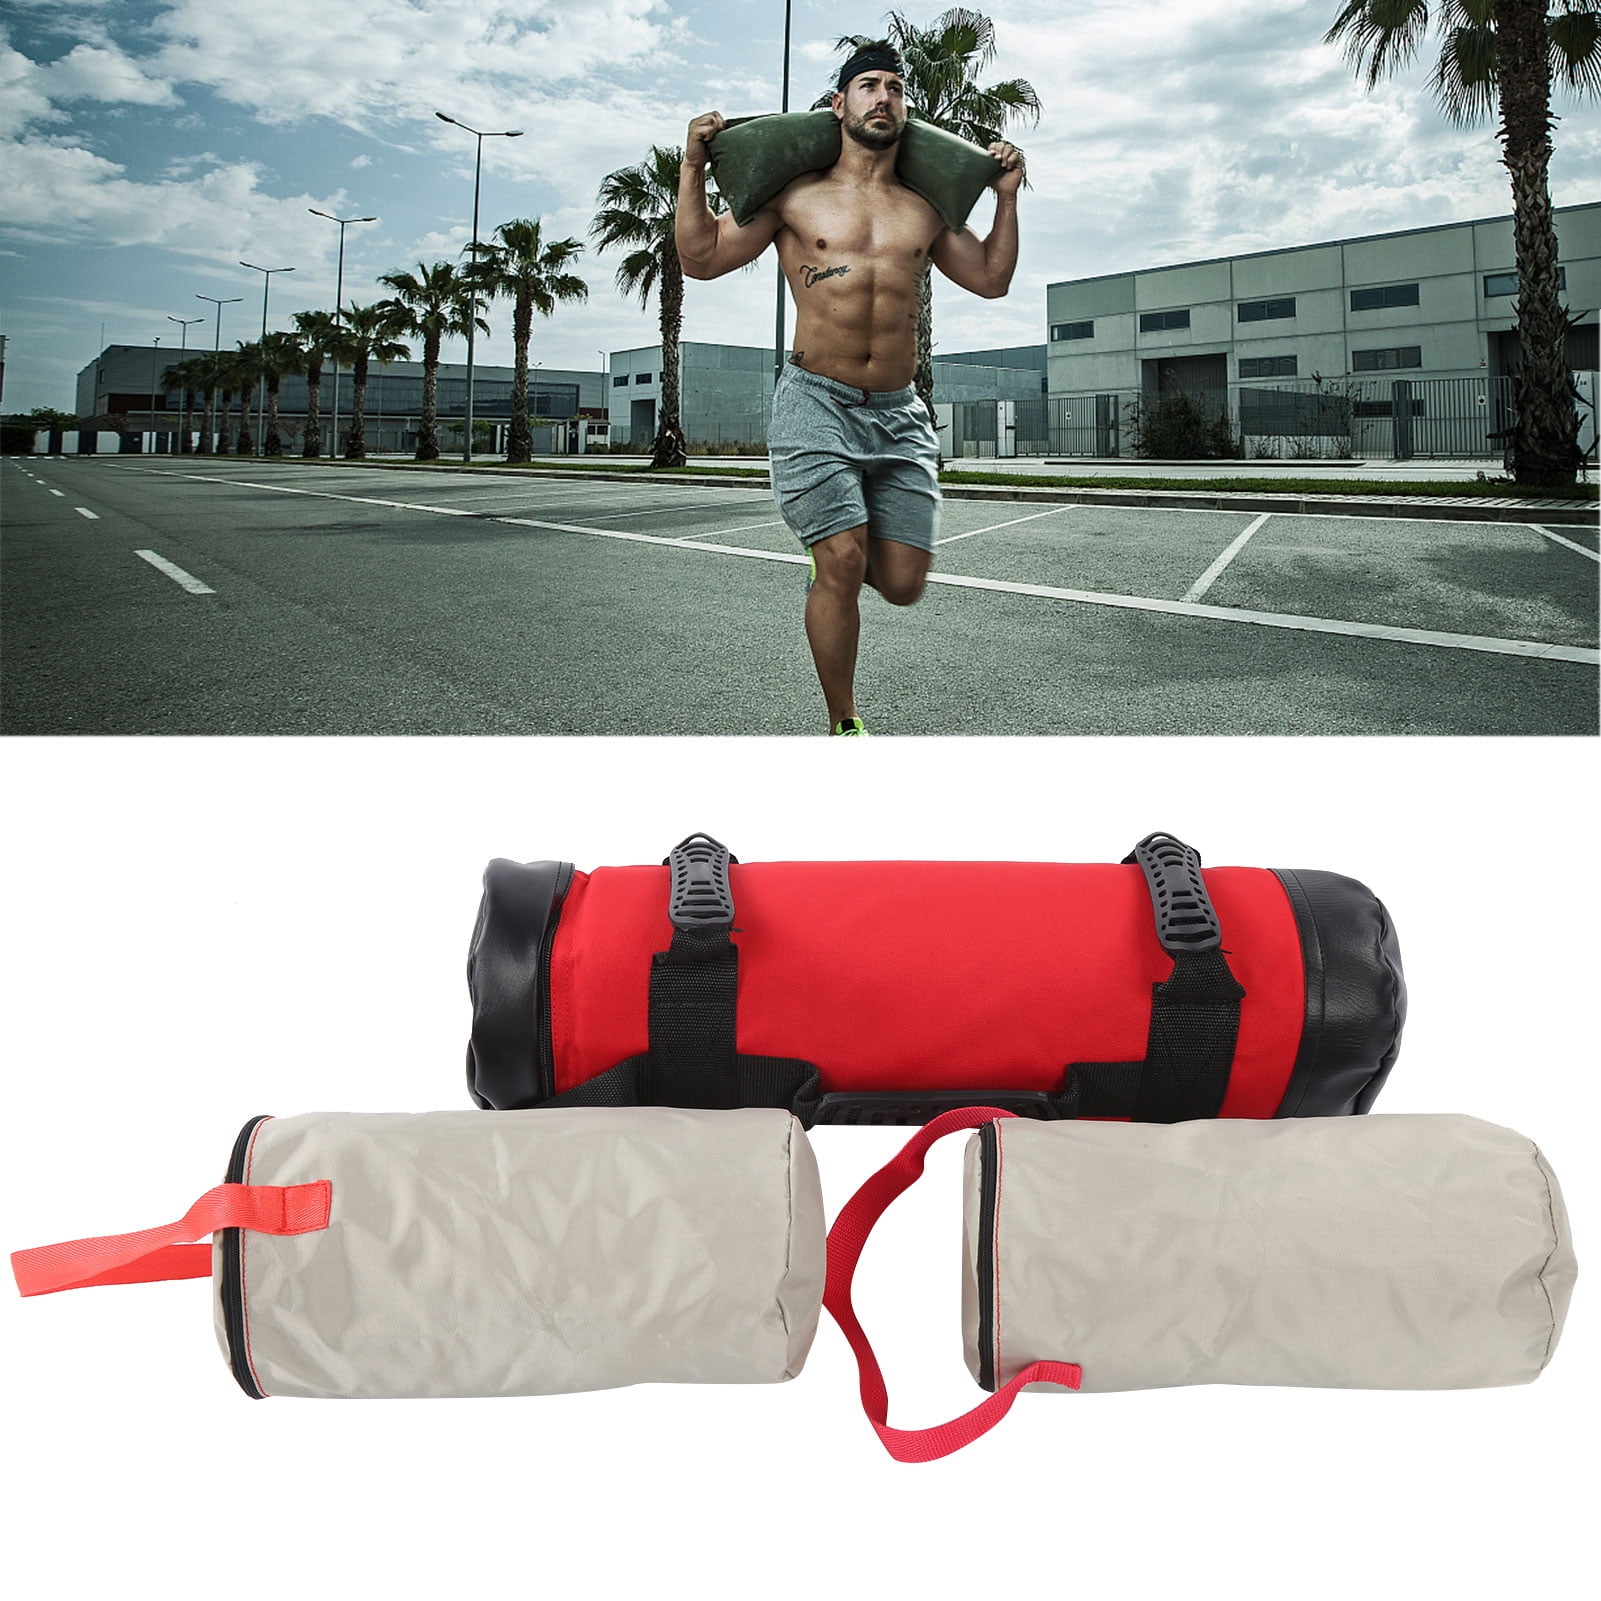  VGEBY Fitness Sandbag, Workout Exercise Sandbags